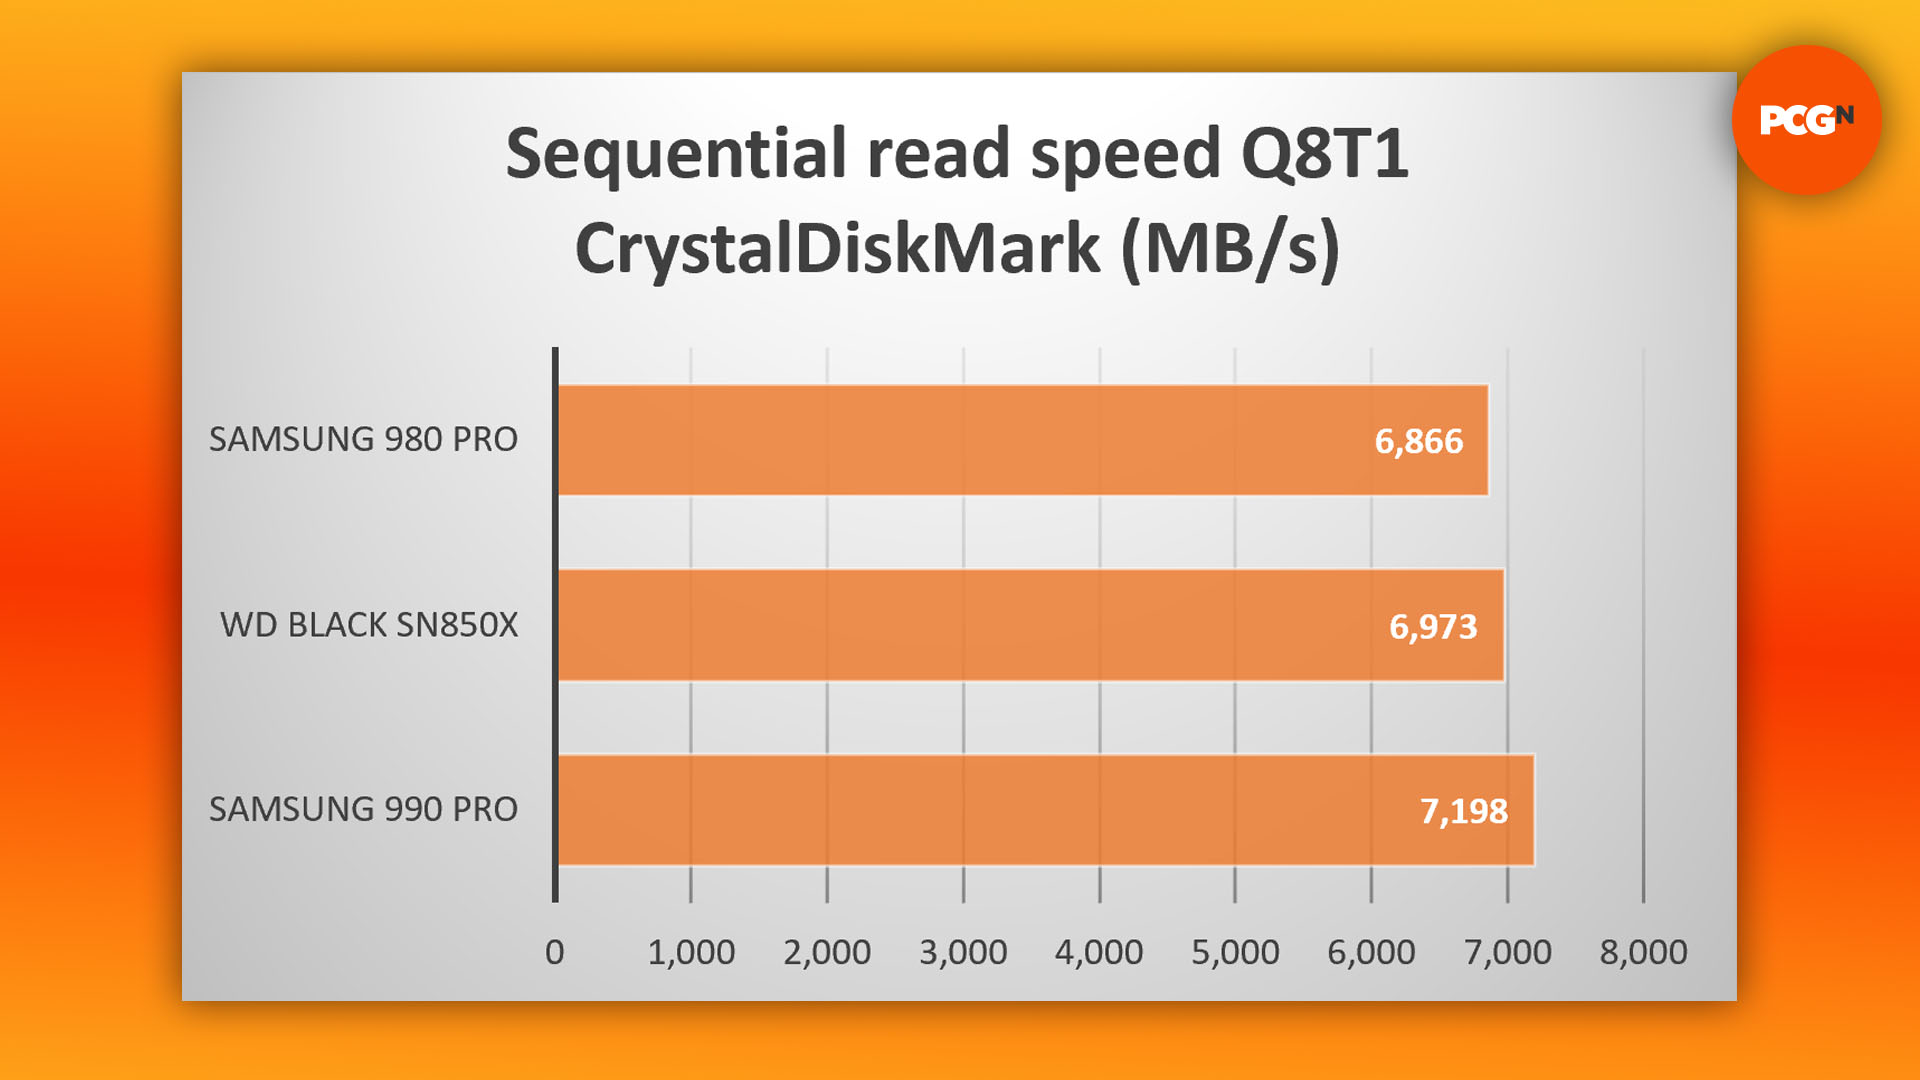 Test du WD Black SN850X : graphique des résultats de la vitesse de lecture séquentielle CrystalDiskMark